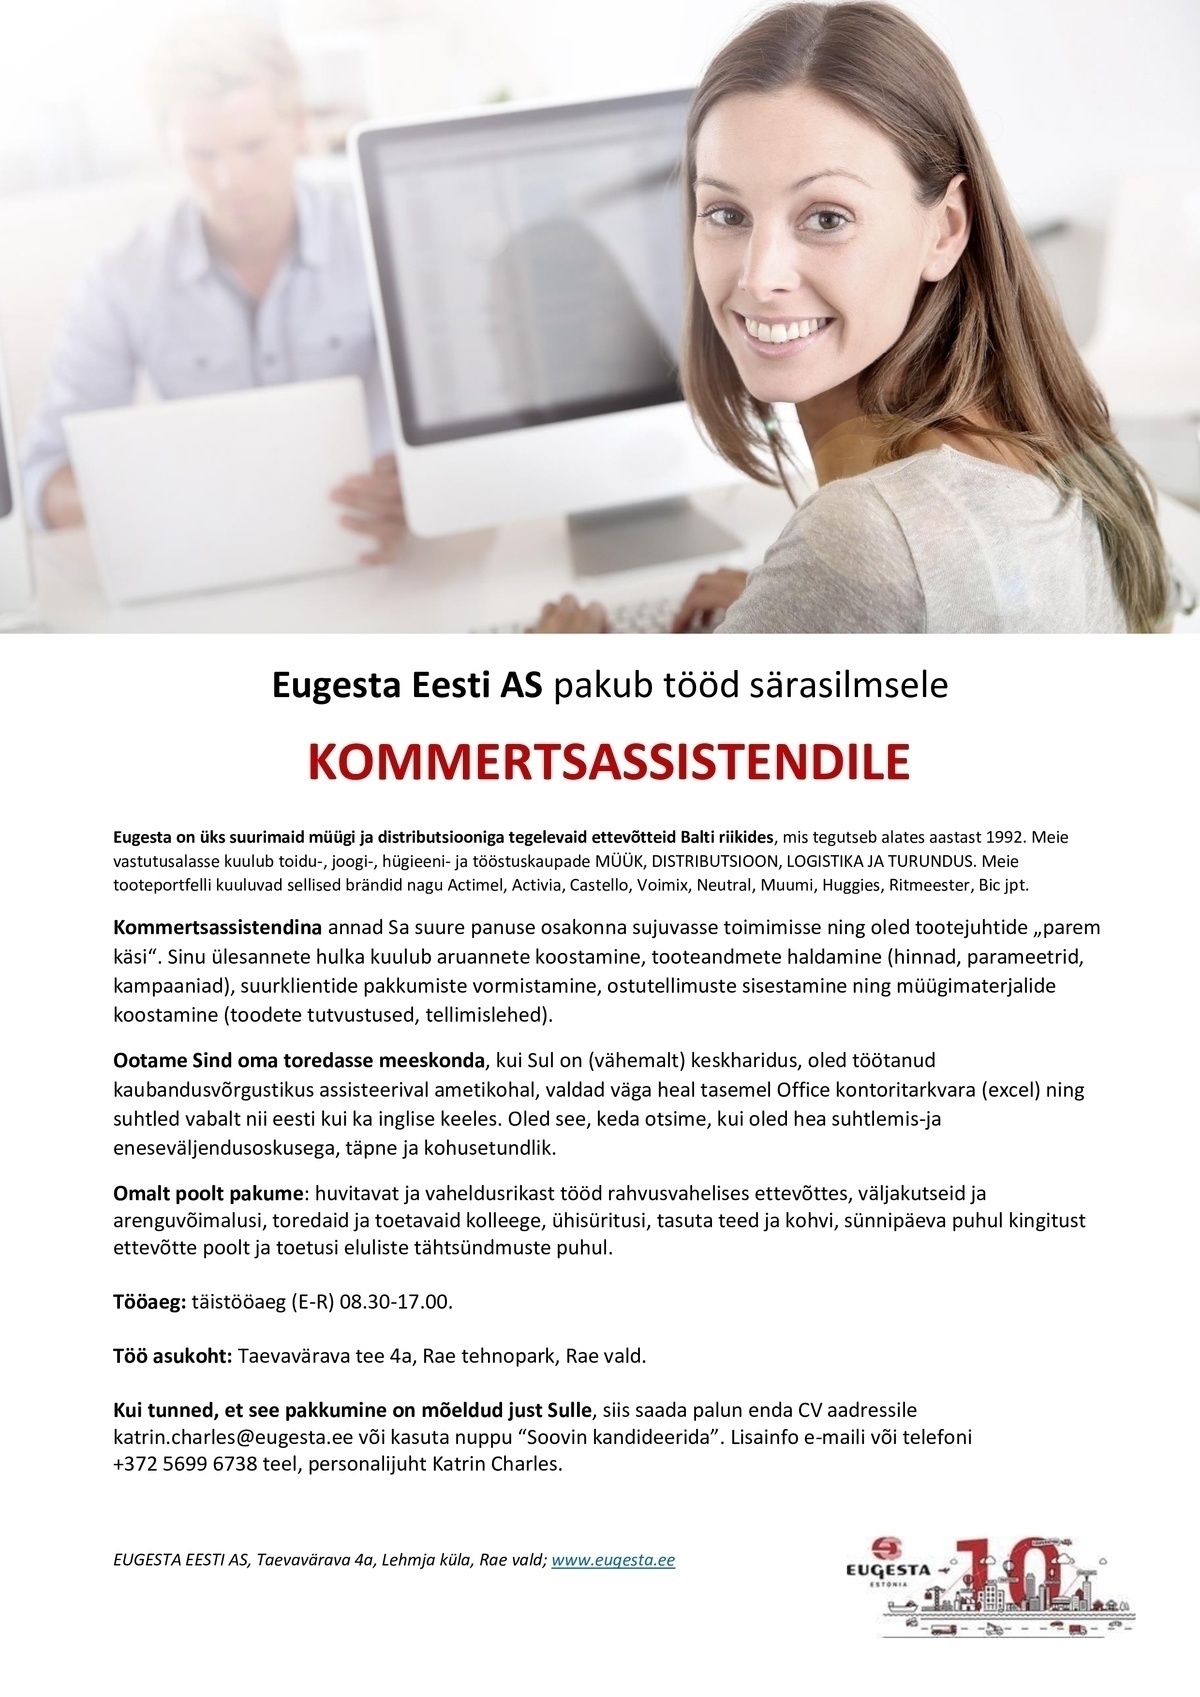 Eugesta Eesti AS Eugesta Eesti pakub tööd särasilmsele kommertsassistendile! 